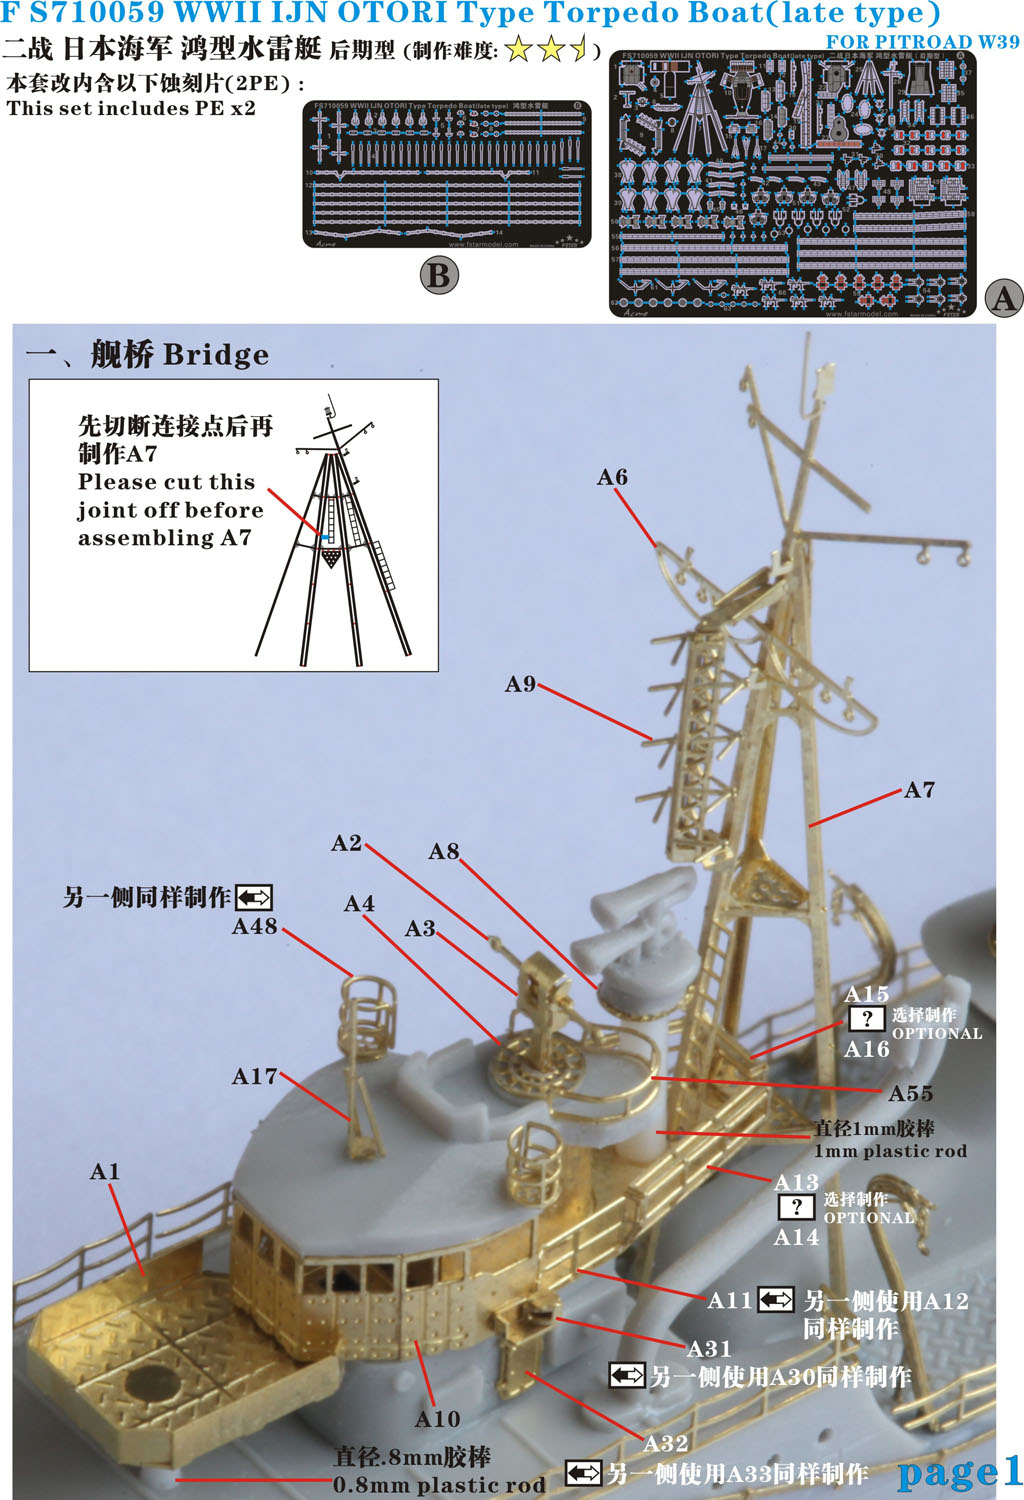 1/700 二战日本海军鸿型水雷艇后期型升级改造套件(配Pitroad W39) - 点击图像关闭